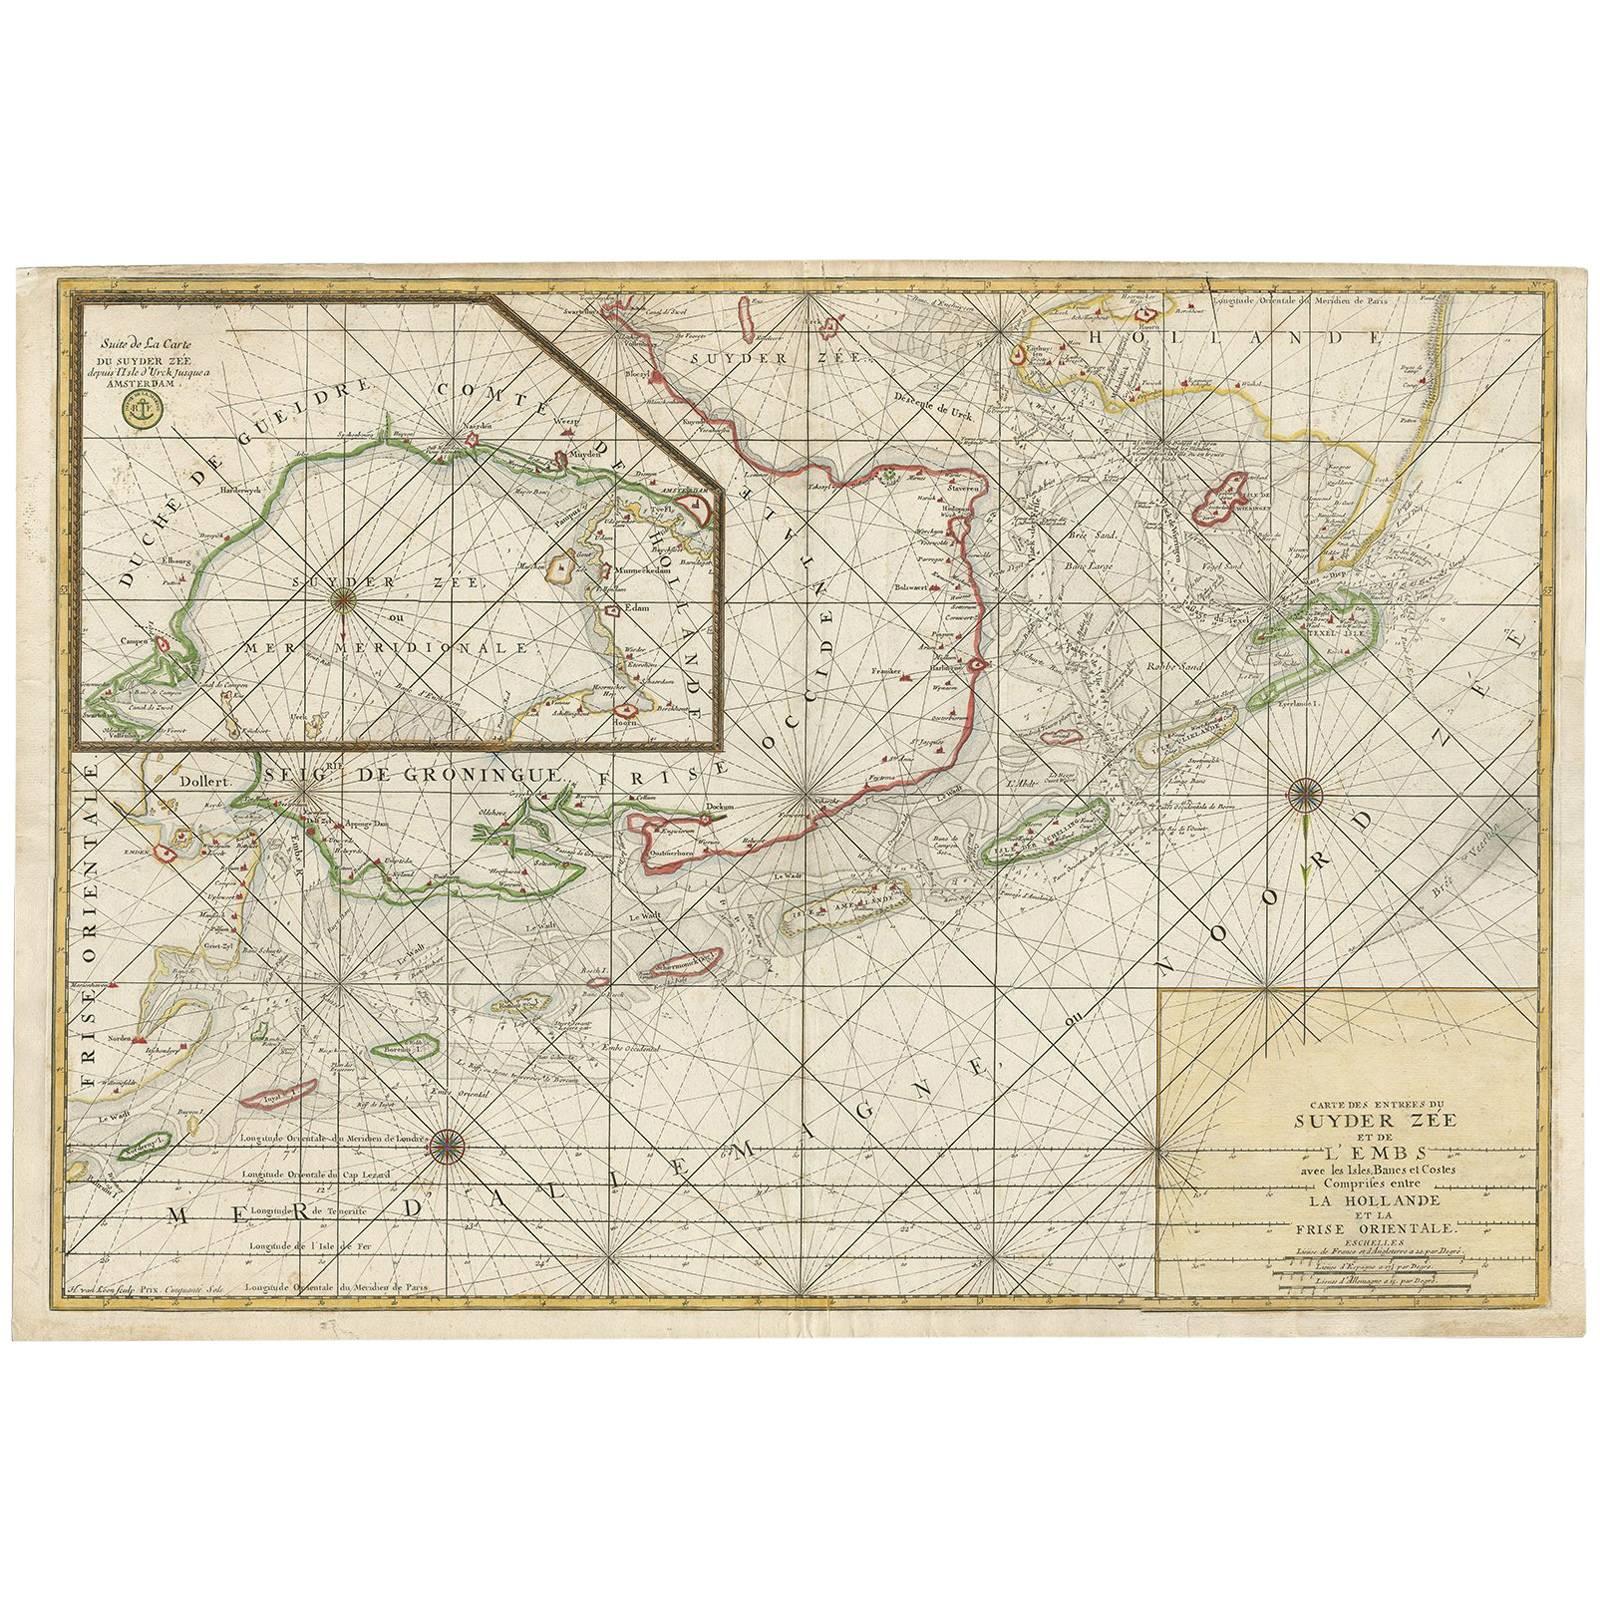 Große Seekarte von der Zuyder Zee & der Nordsee mit den Watteninseln, 1773